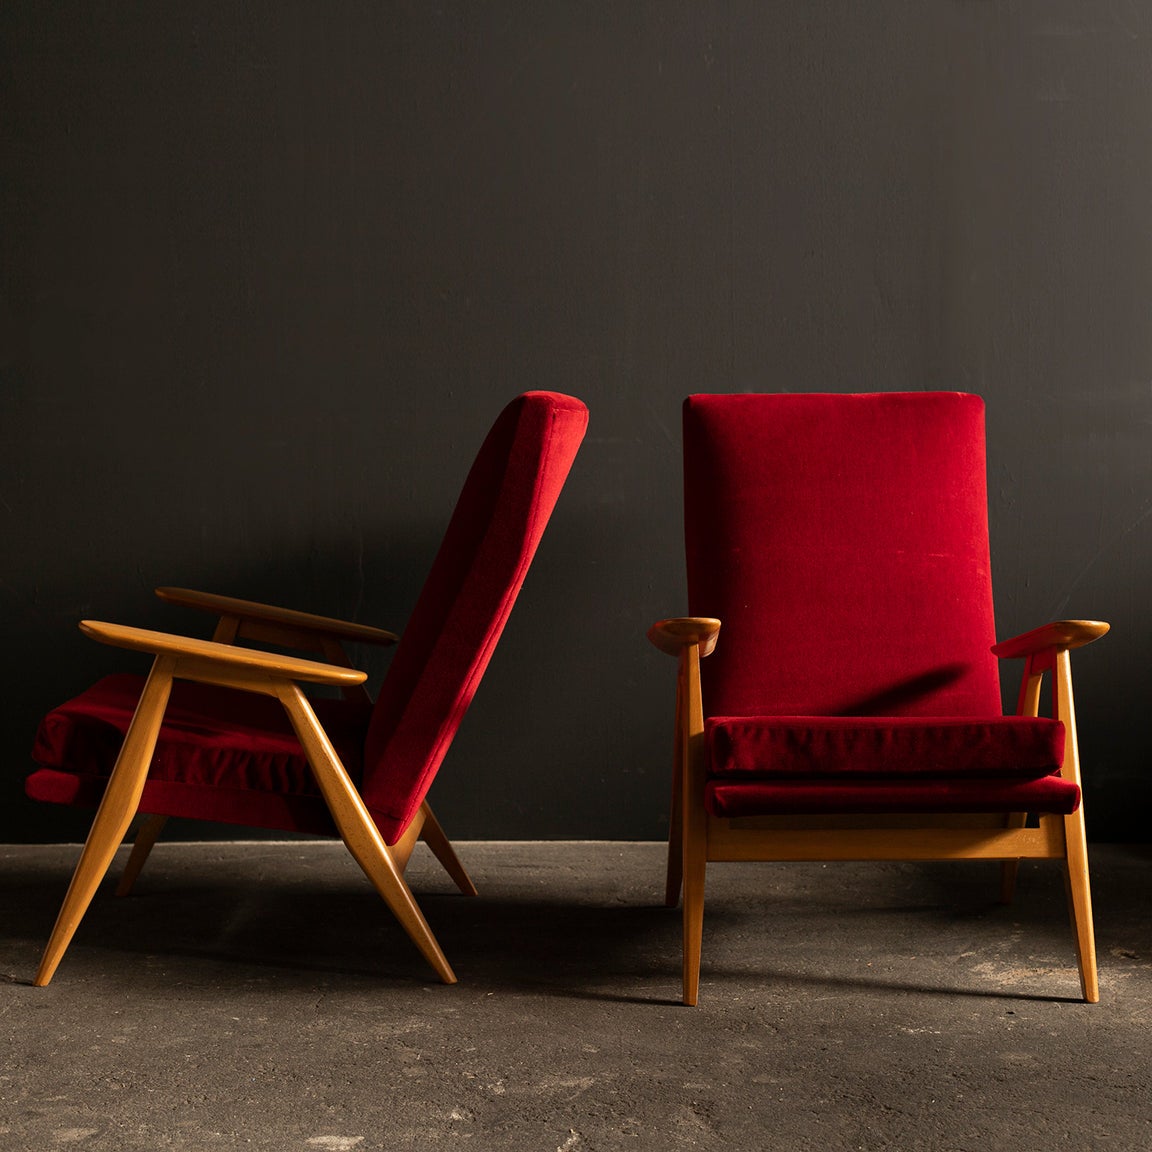 Excellente paire de fauteuils SK640 du designer français Pierre Guariche pour Steiner. Vers les années 1950.
Bois de frêne massif et revêtement en velours rouge.
  